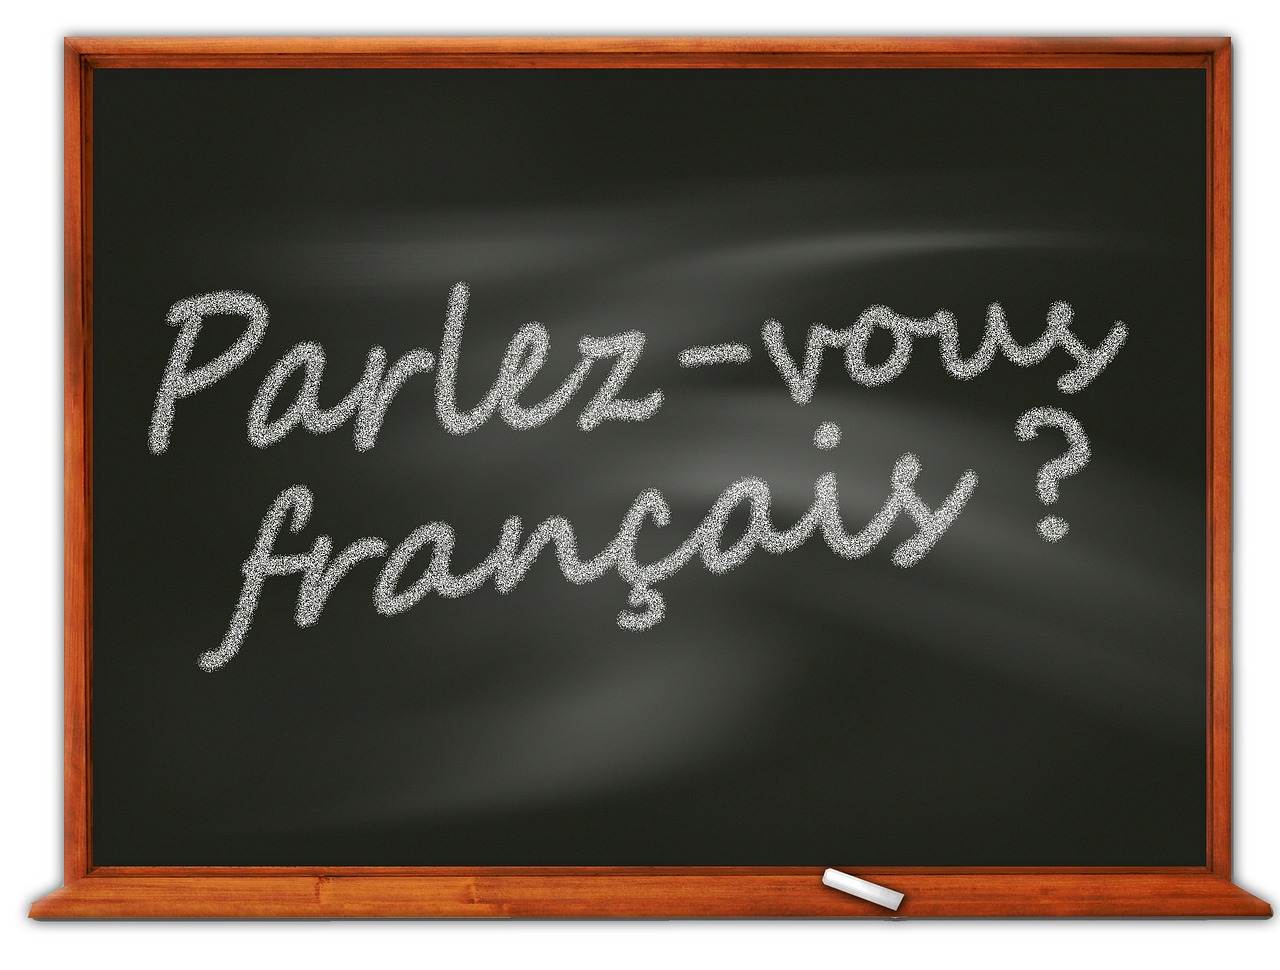 Frans - volledig beginners